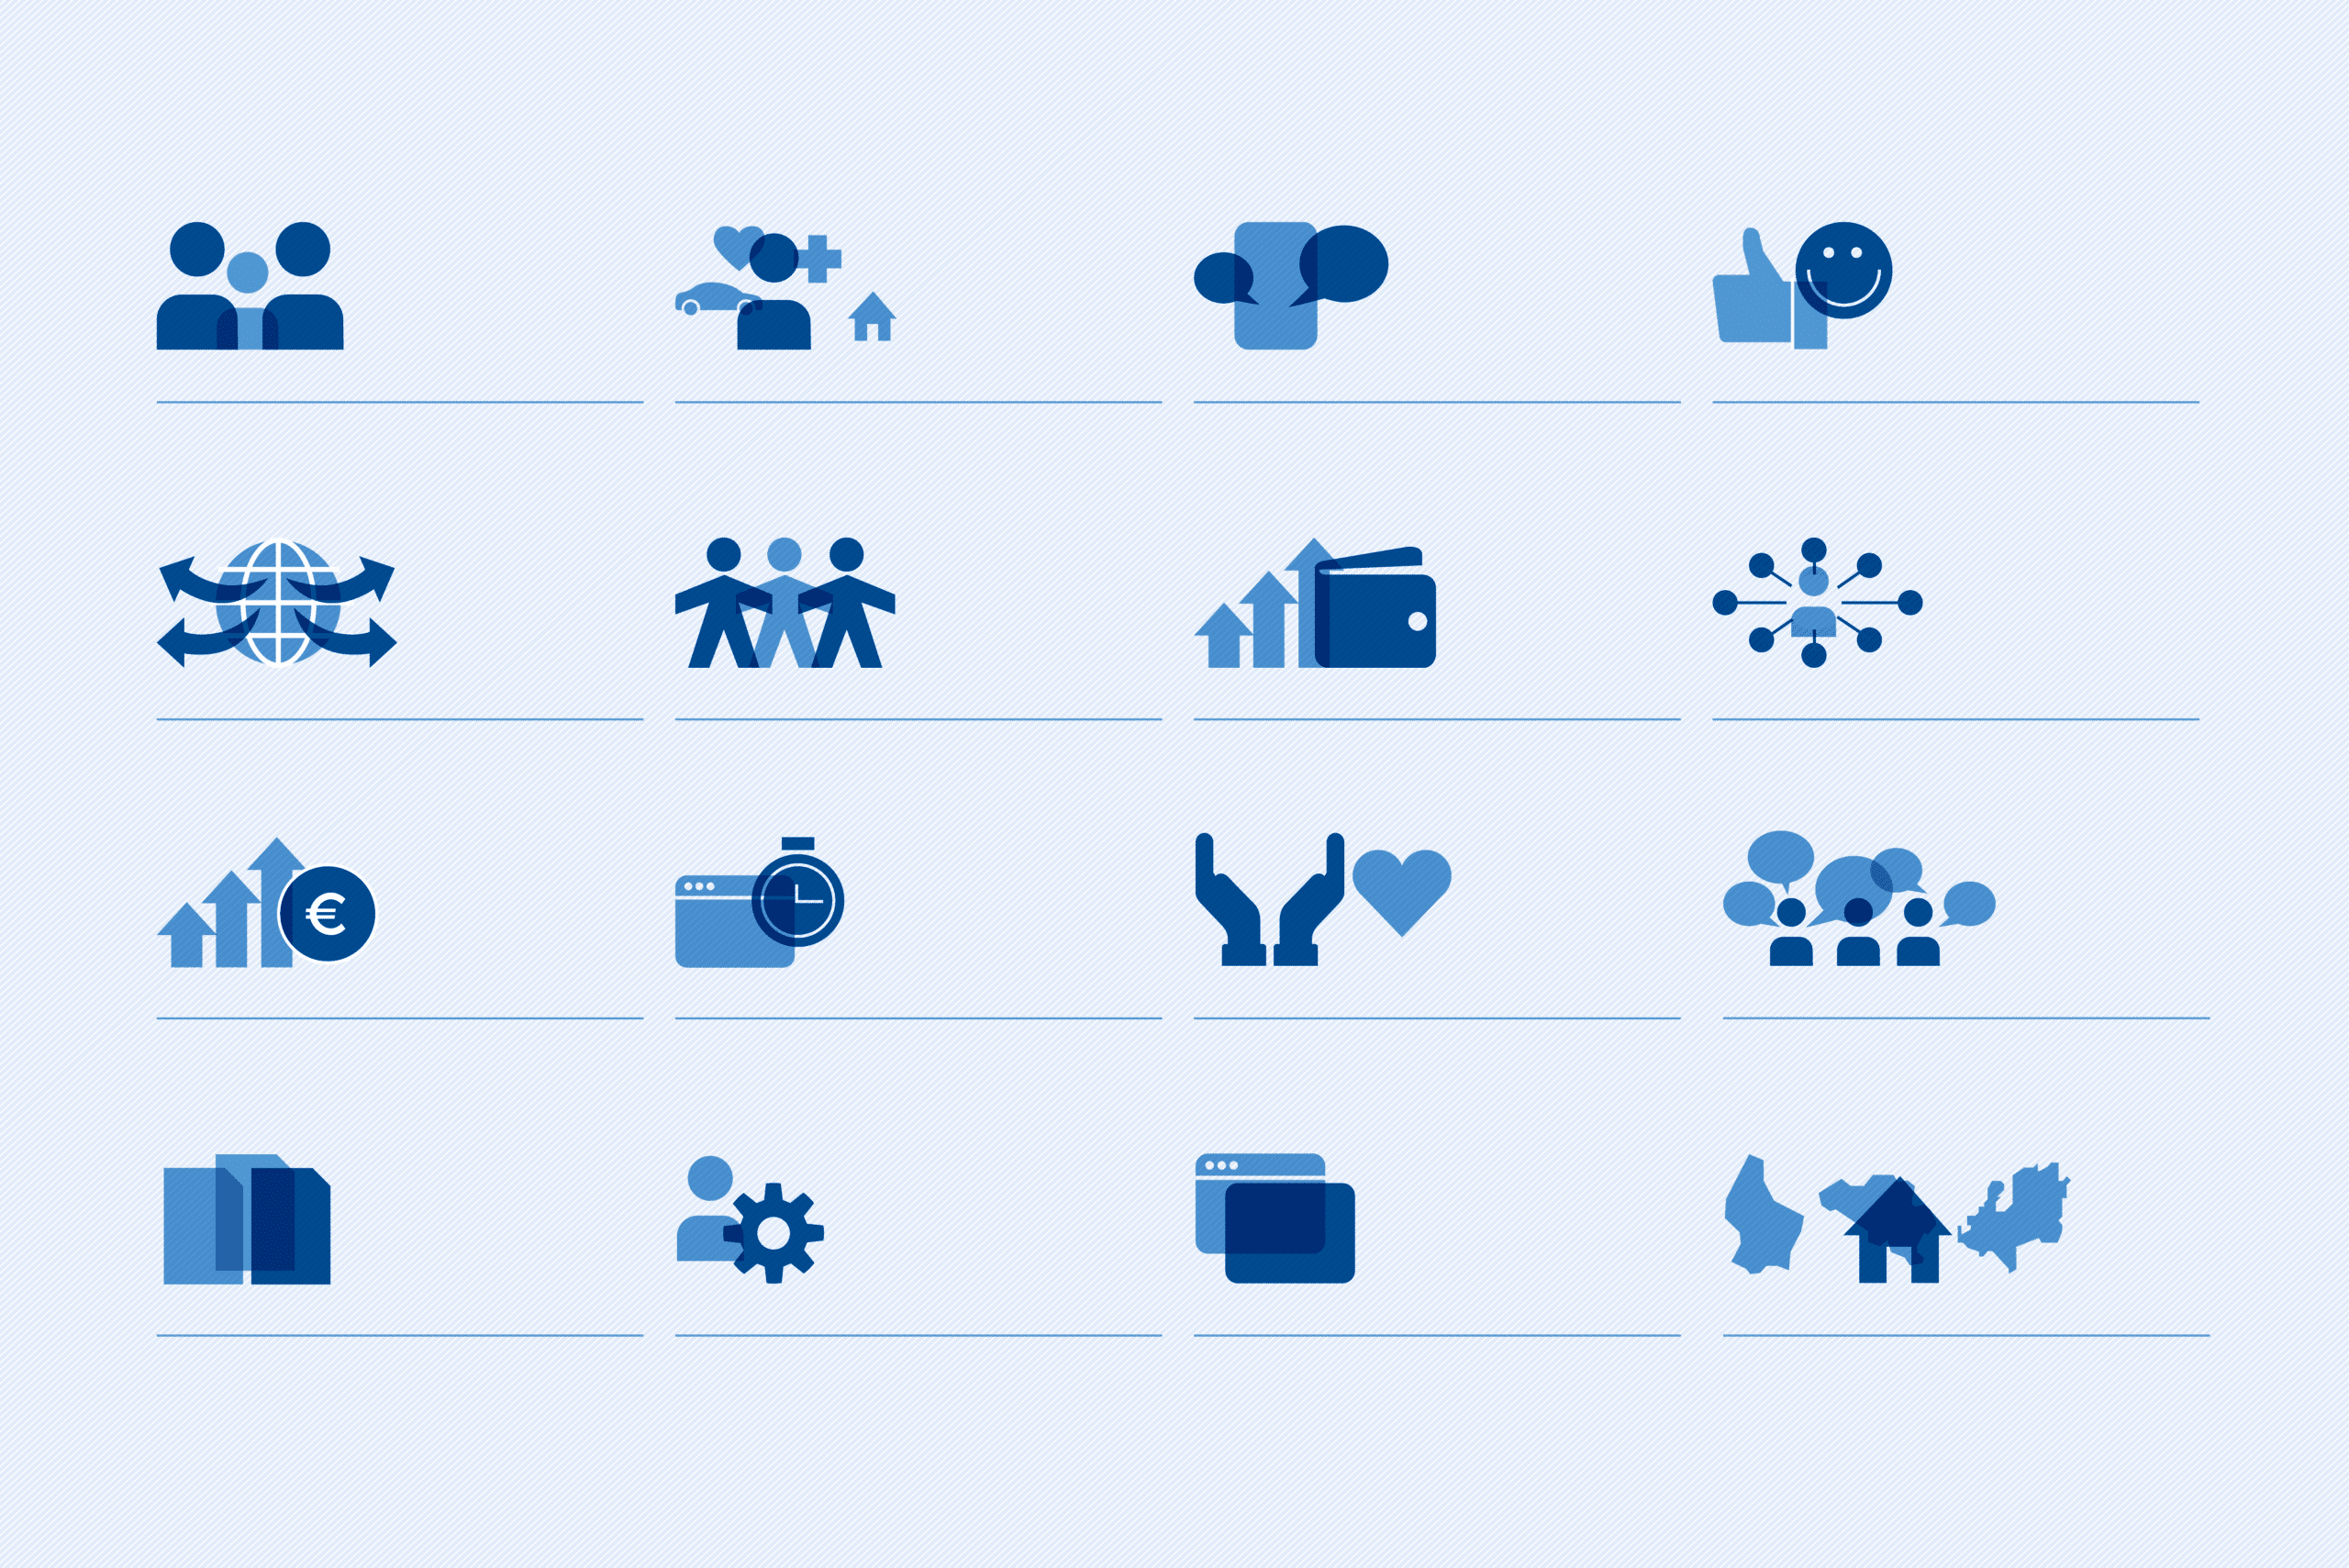 Grille d'icônes bleues sur fond clair représentant divers services et concepts, tels que la famille, les finances, le bien-être, les voyages, et les réseaux sociaux, organisées en quatre rangées.